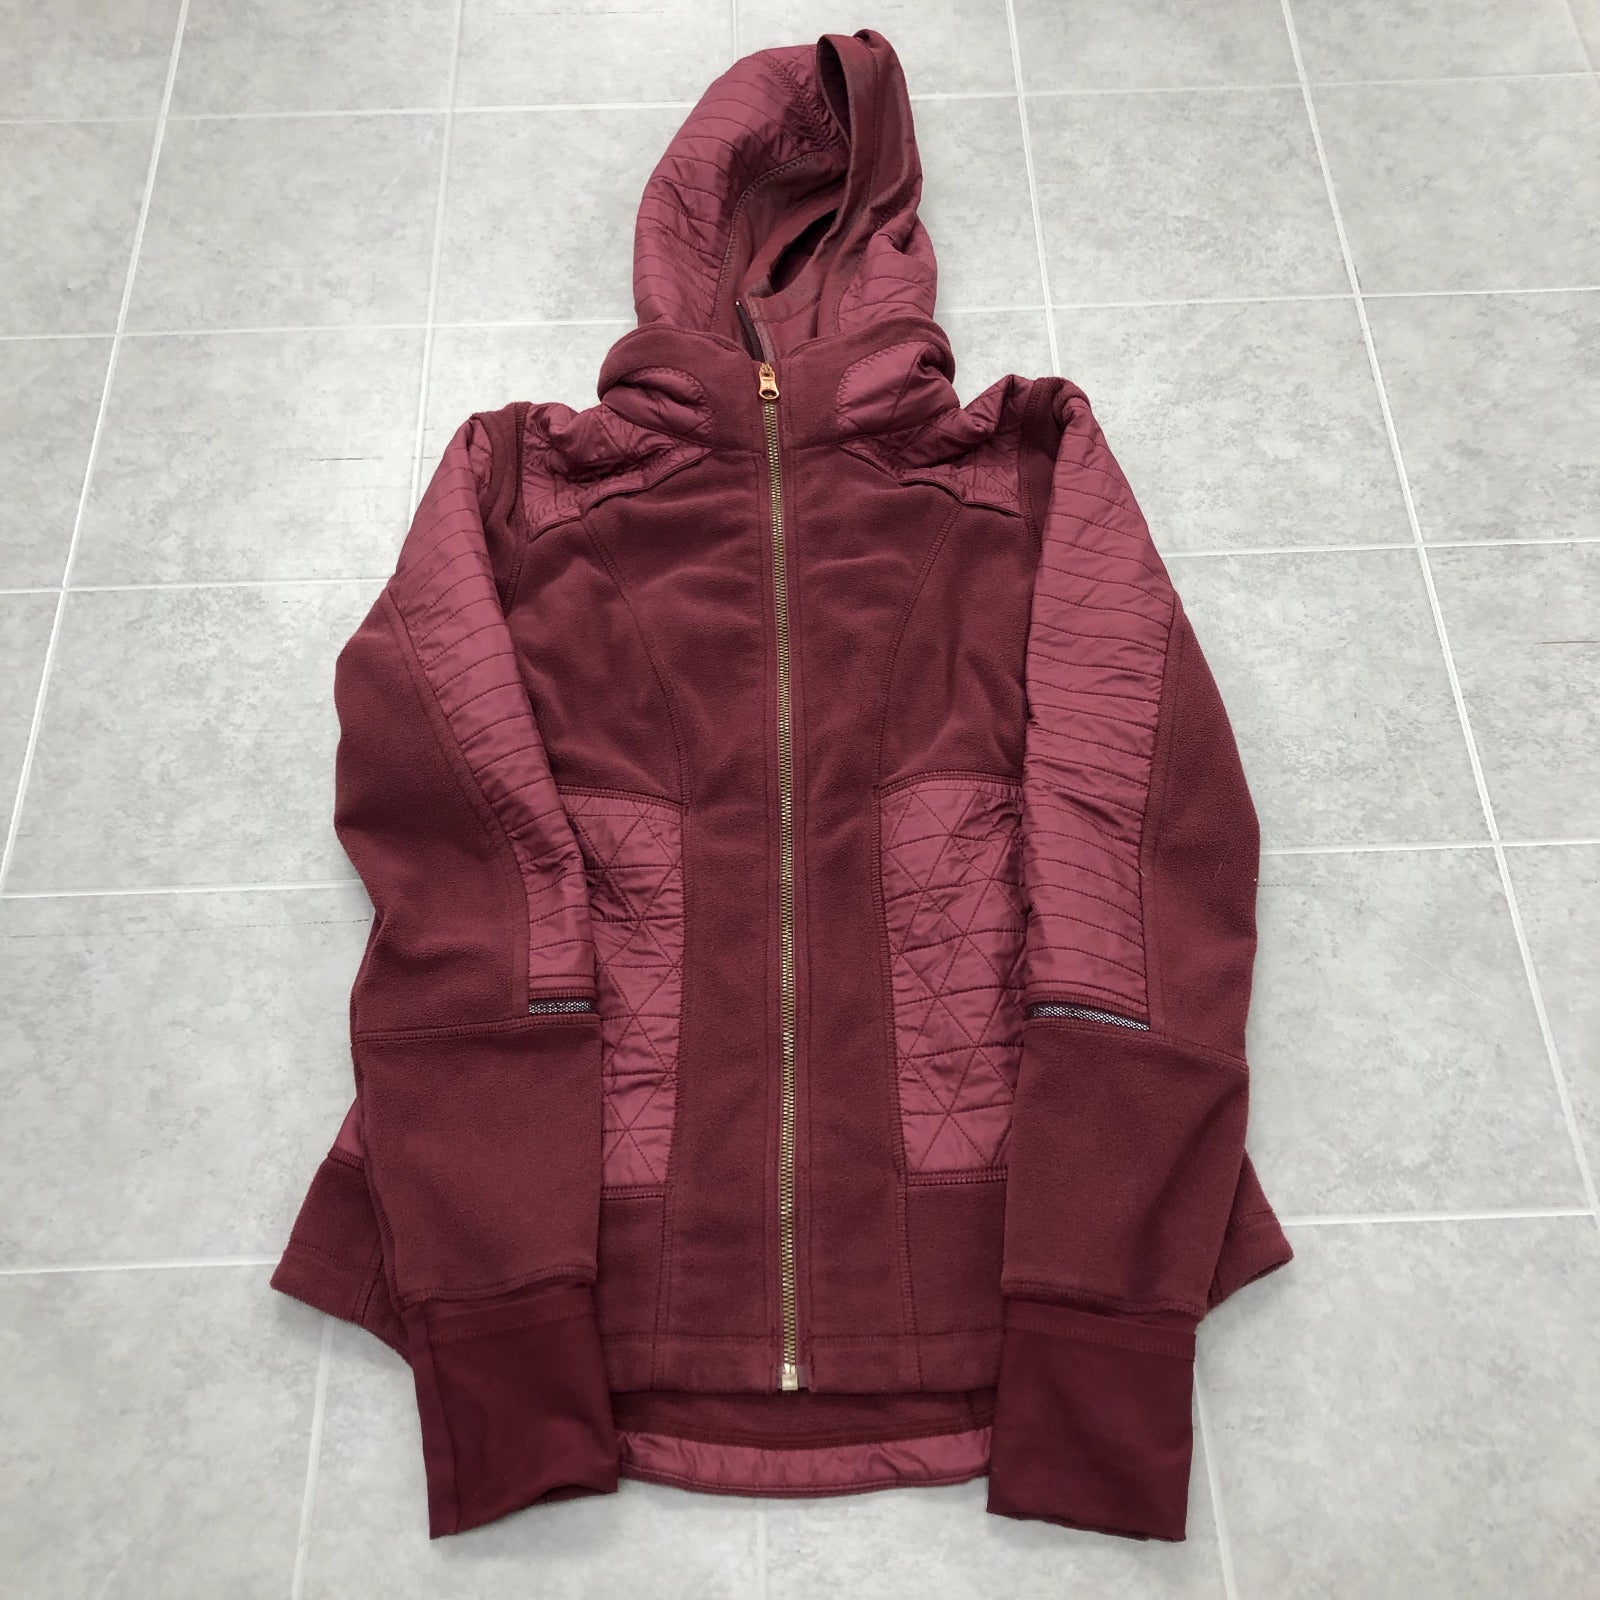 Lululemon Athletica Burgundy Long Sleeve Hooded Insulated Jacket Adult Size 6